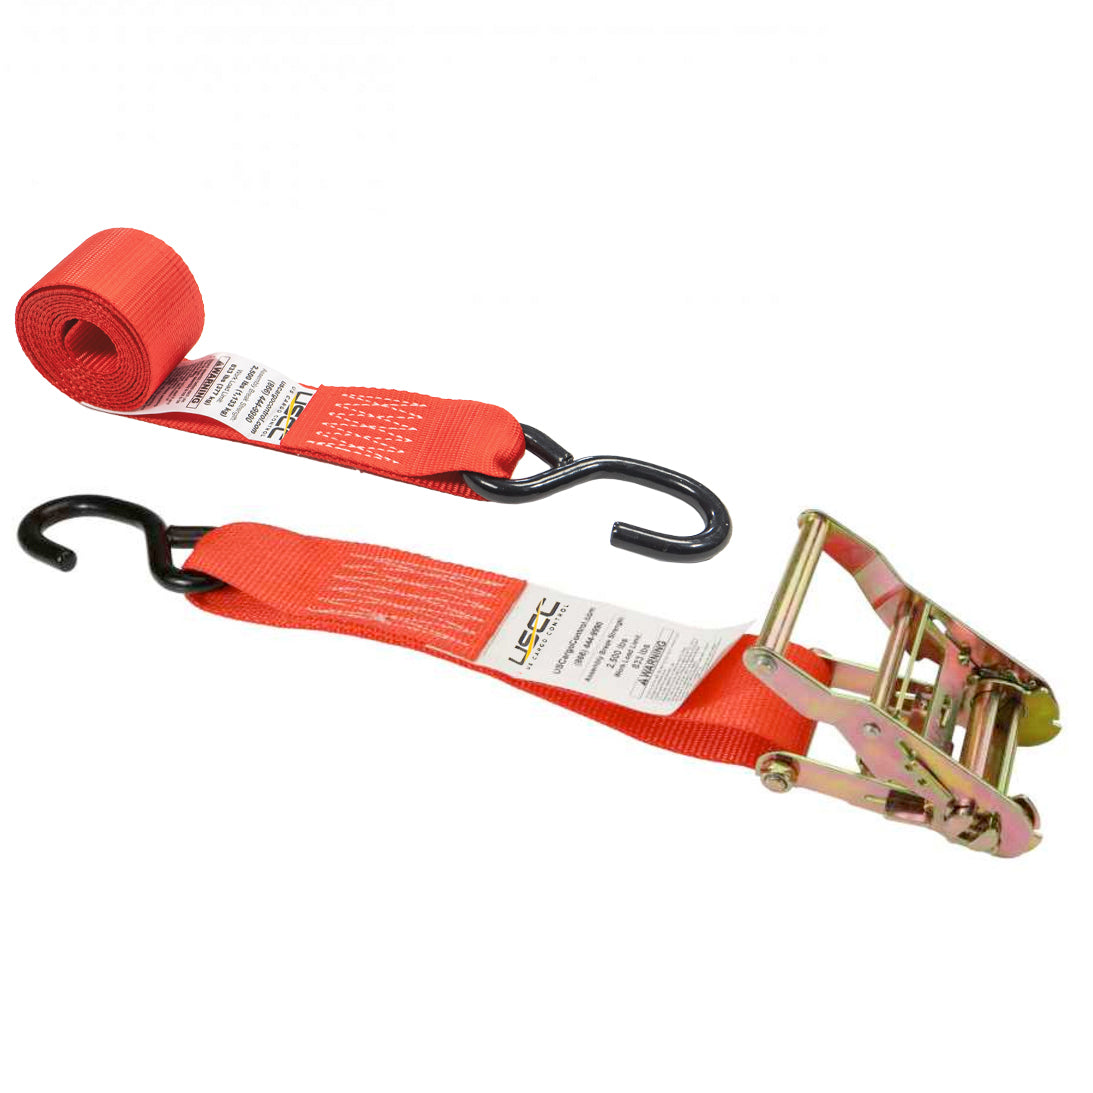 8' ratchet strap -  2" red s hooks ratchet strap